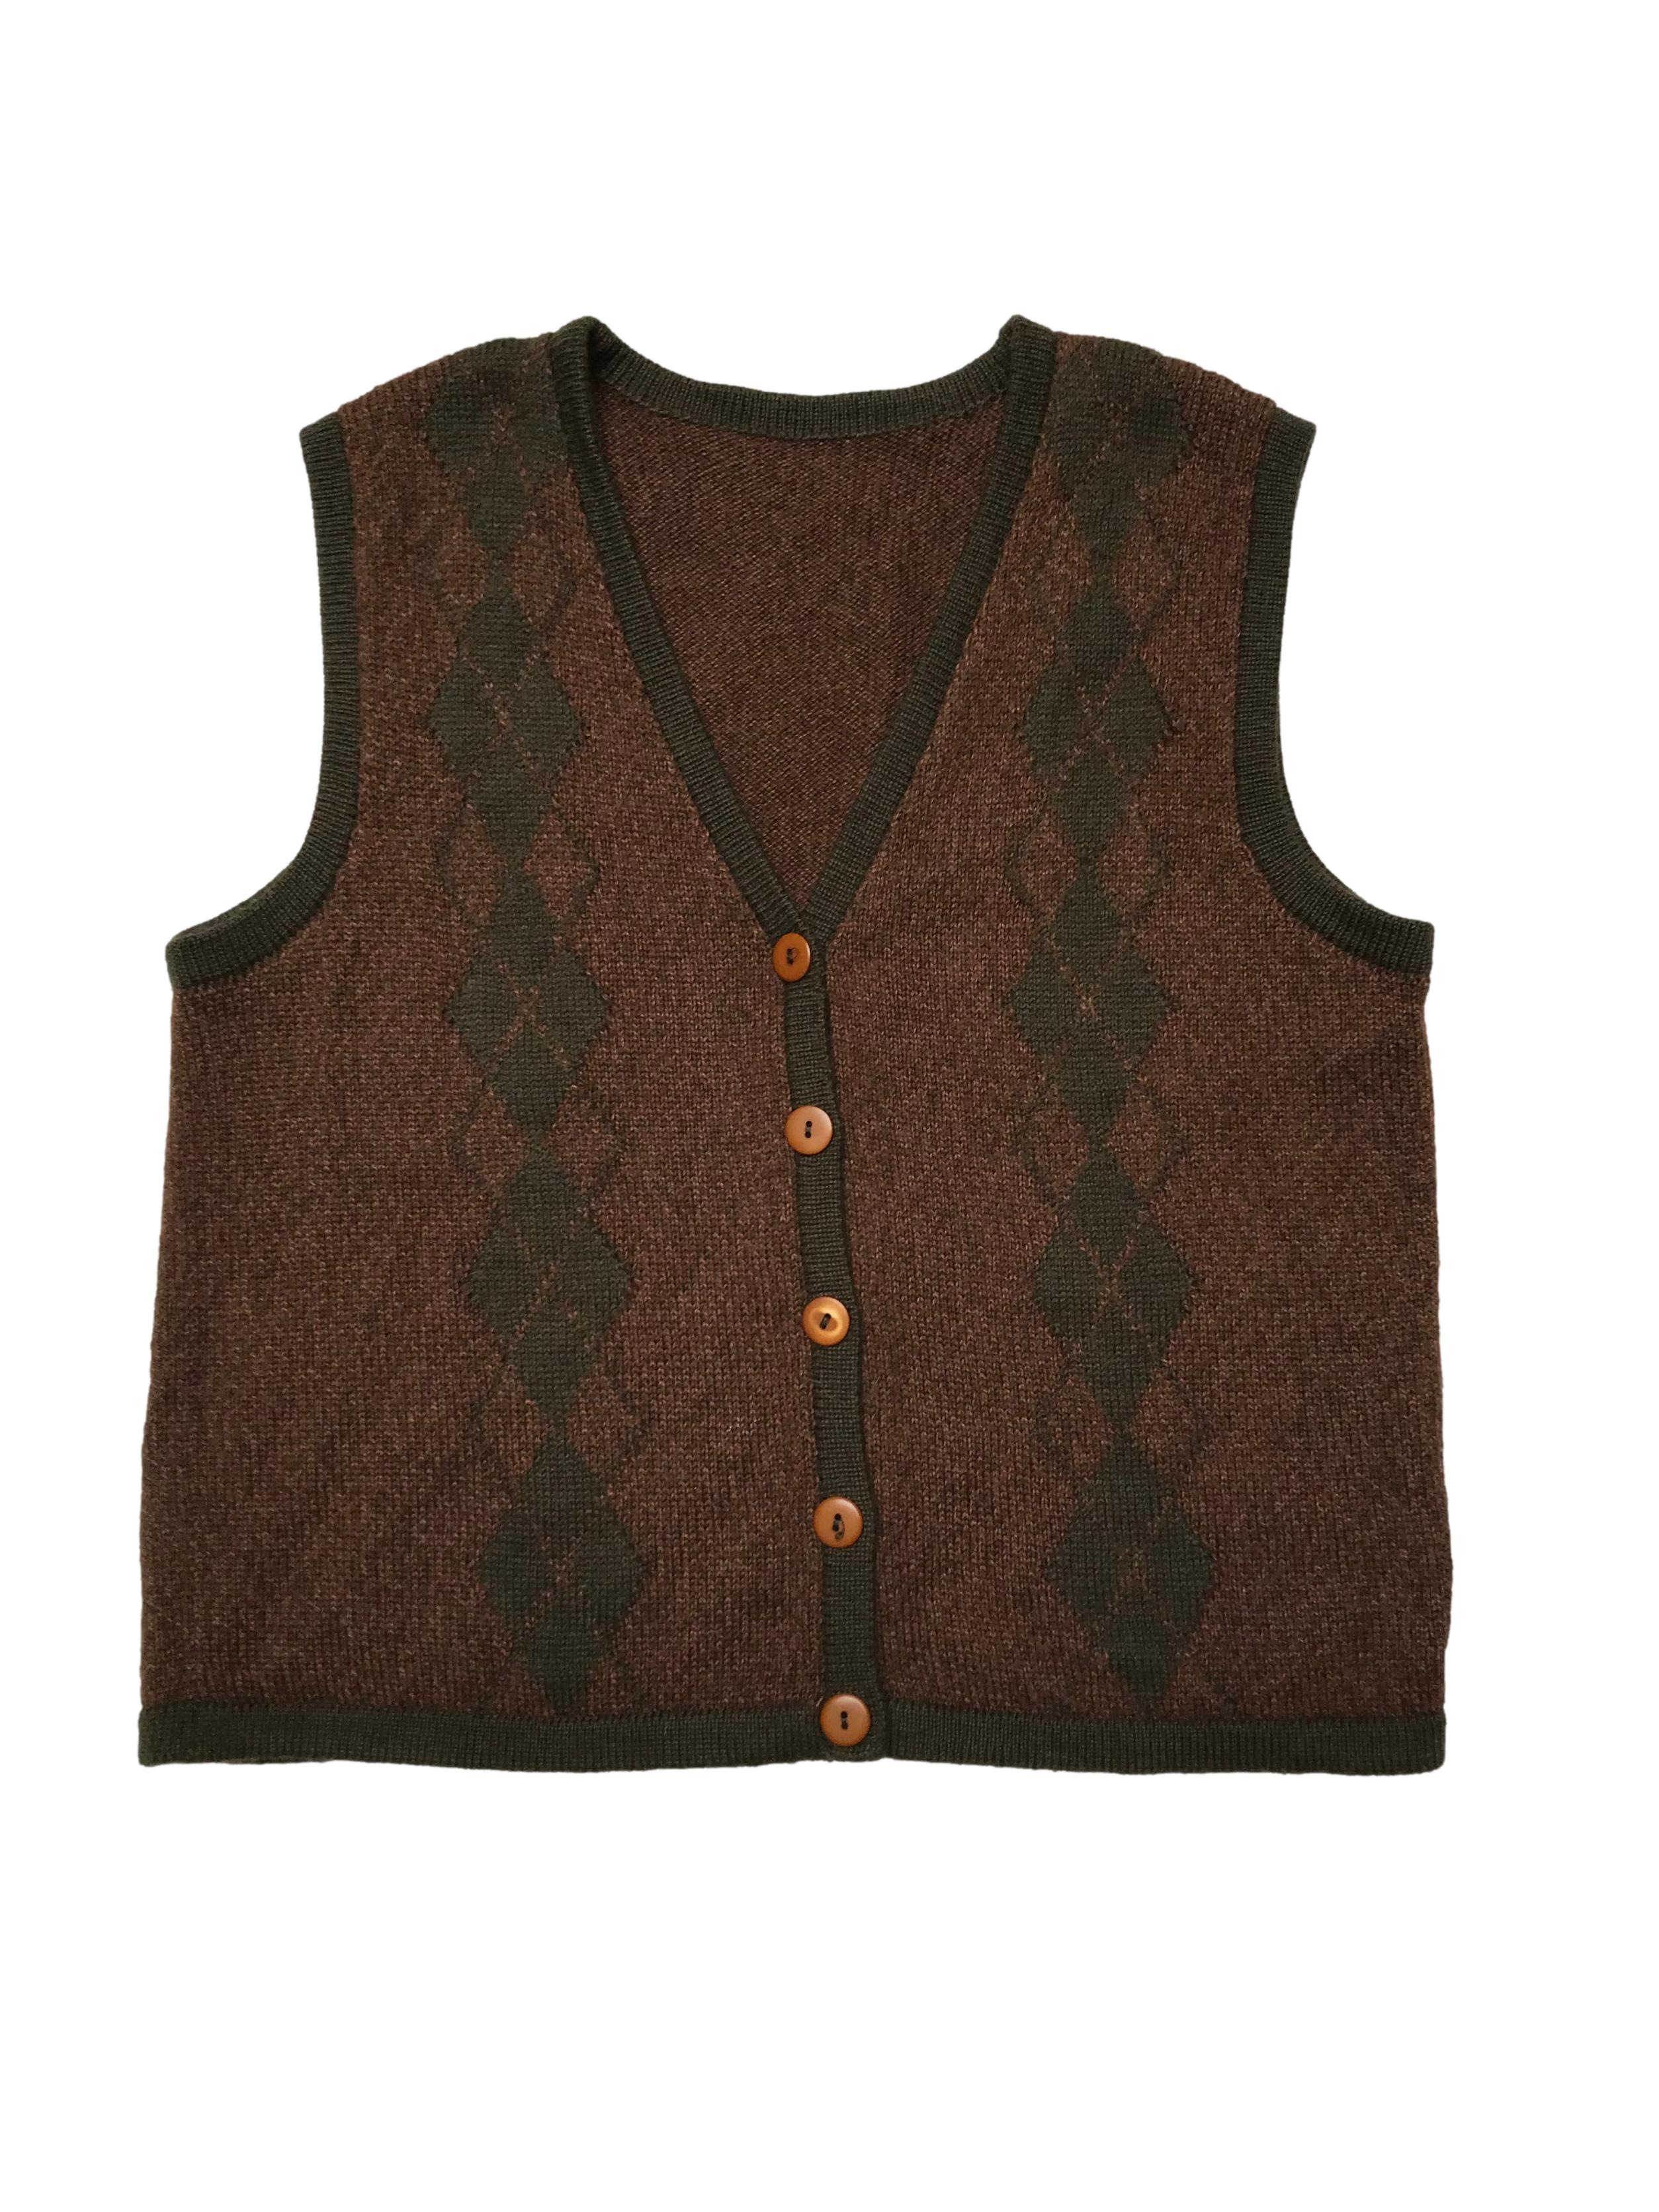 Chaleco vintage tejido marrón jaspeado con rombos y ribetes verdes, cierre con botones. Ancho 104cm Largo 55cm 